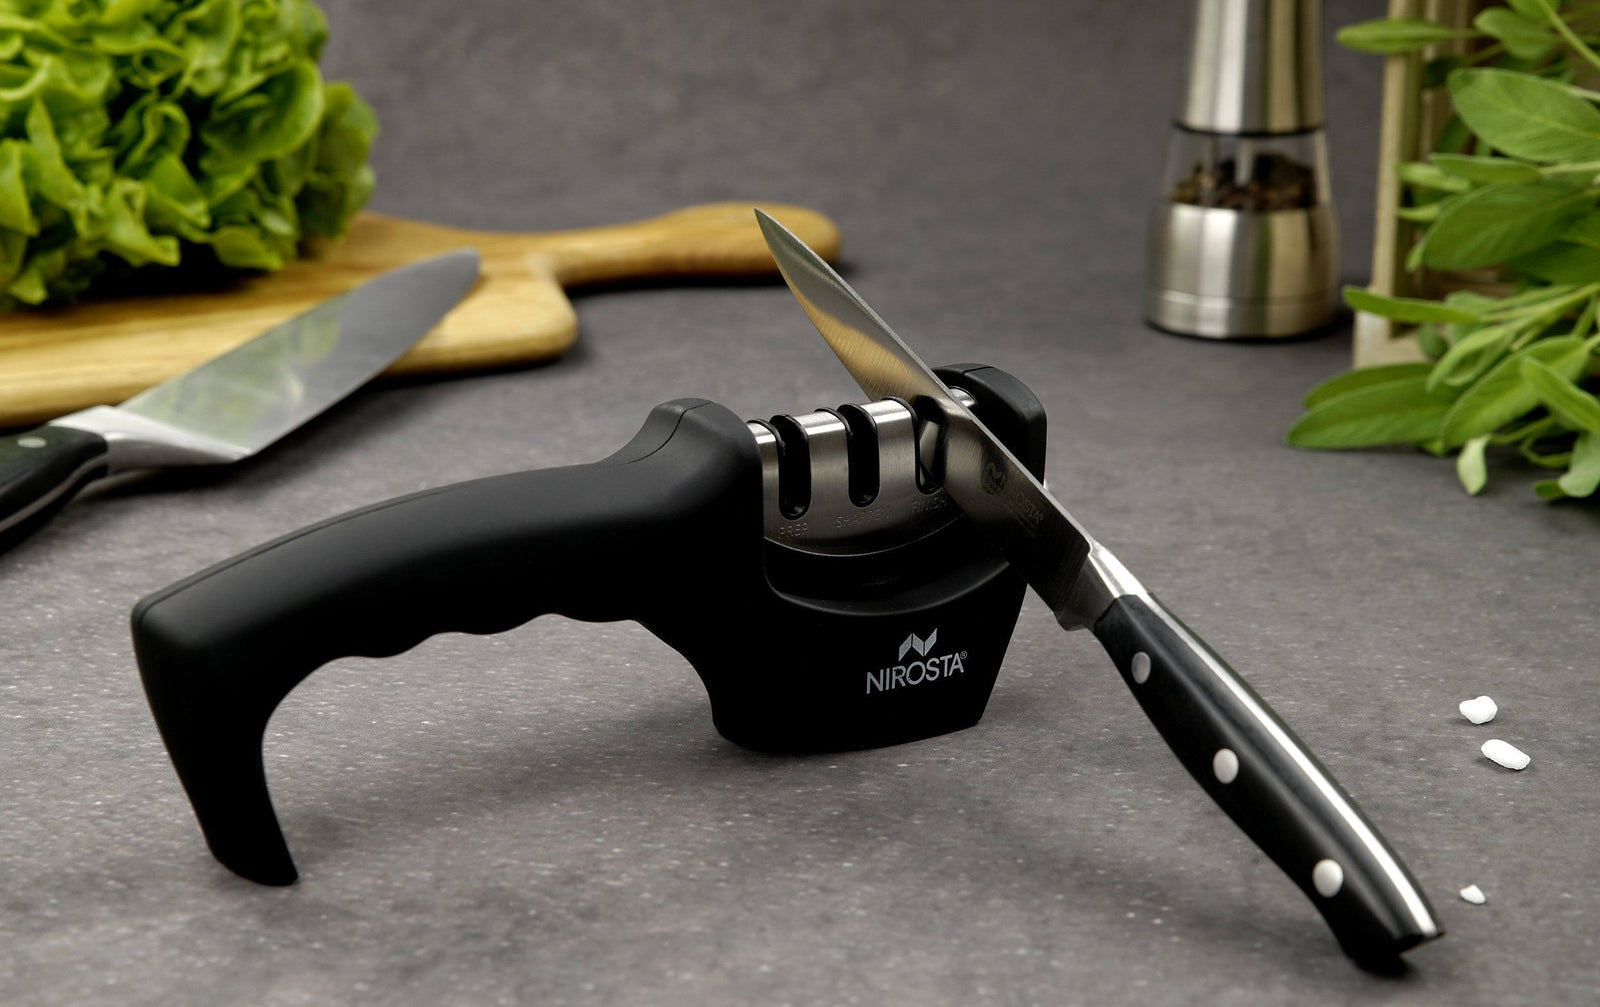 Astuces cuisine : comment bien aiguiser un couteau ? - Educatel